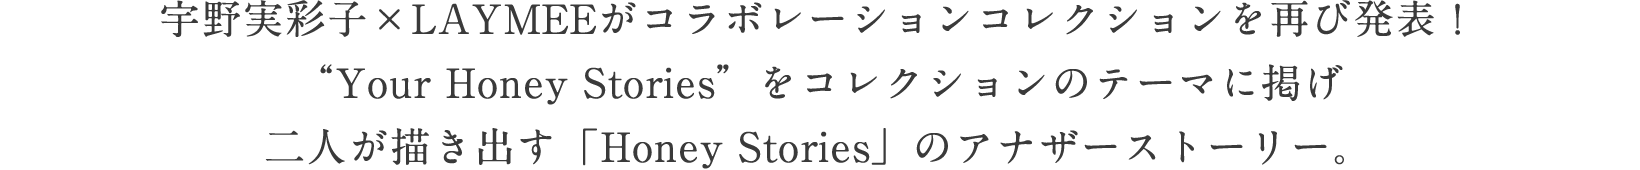 宇野実彩子×LAYMEEがコラボレーションコレクションを再び発表！“Your Honey Stories”をコレクションのテーマに掲げ二人が描き出す「Honey Stories」のアナザーストーリー。